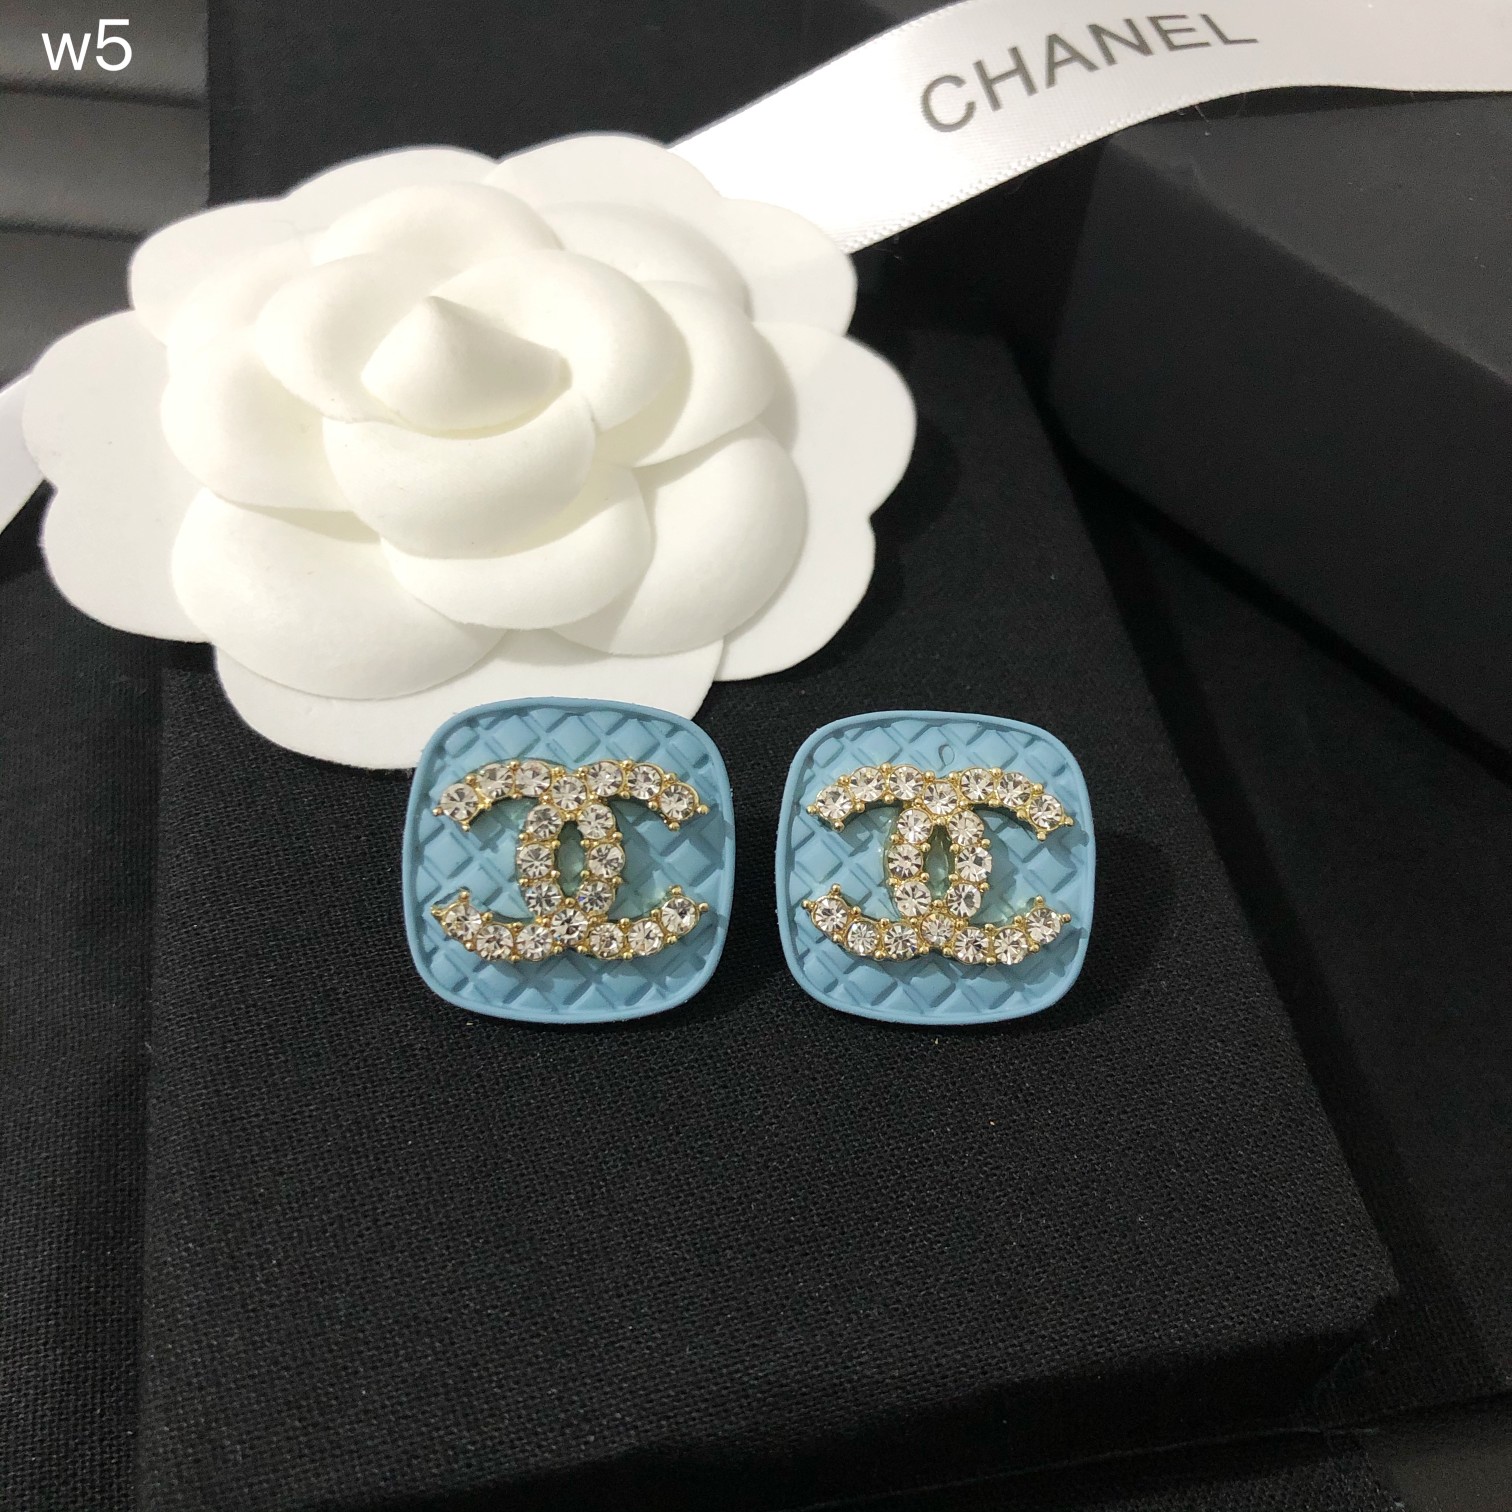 Chanel earring 108469